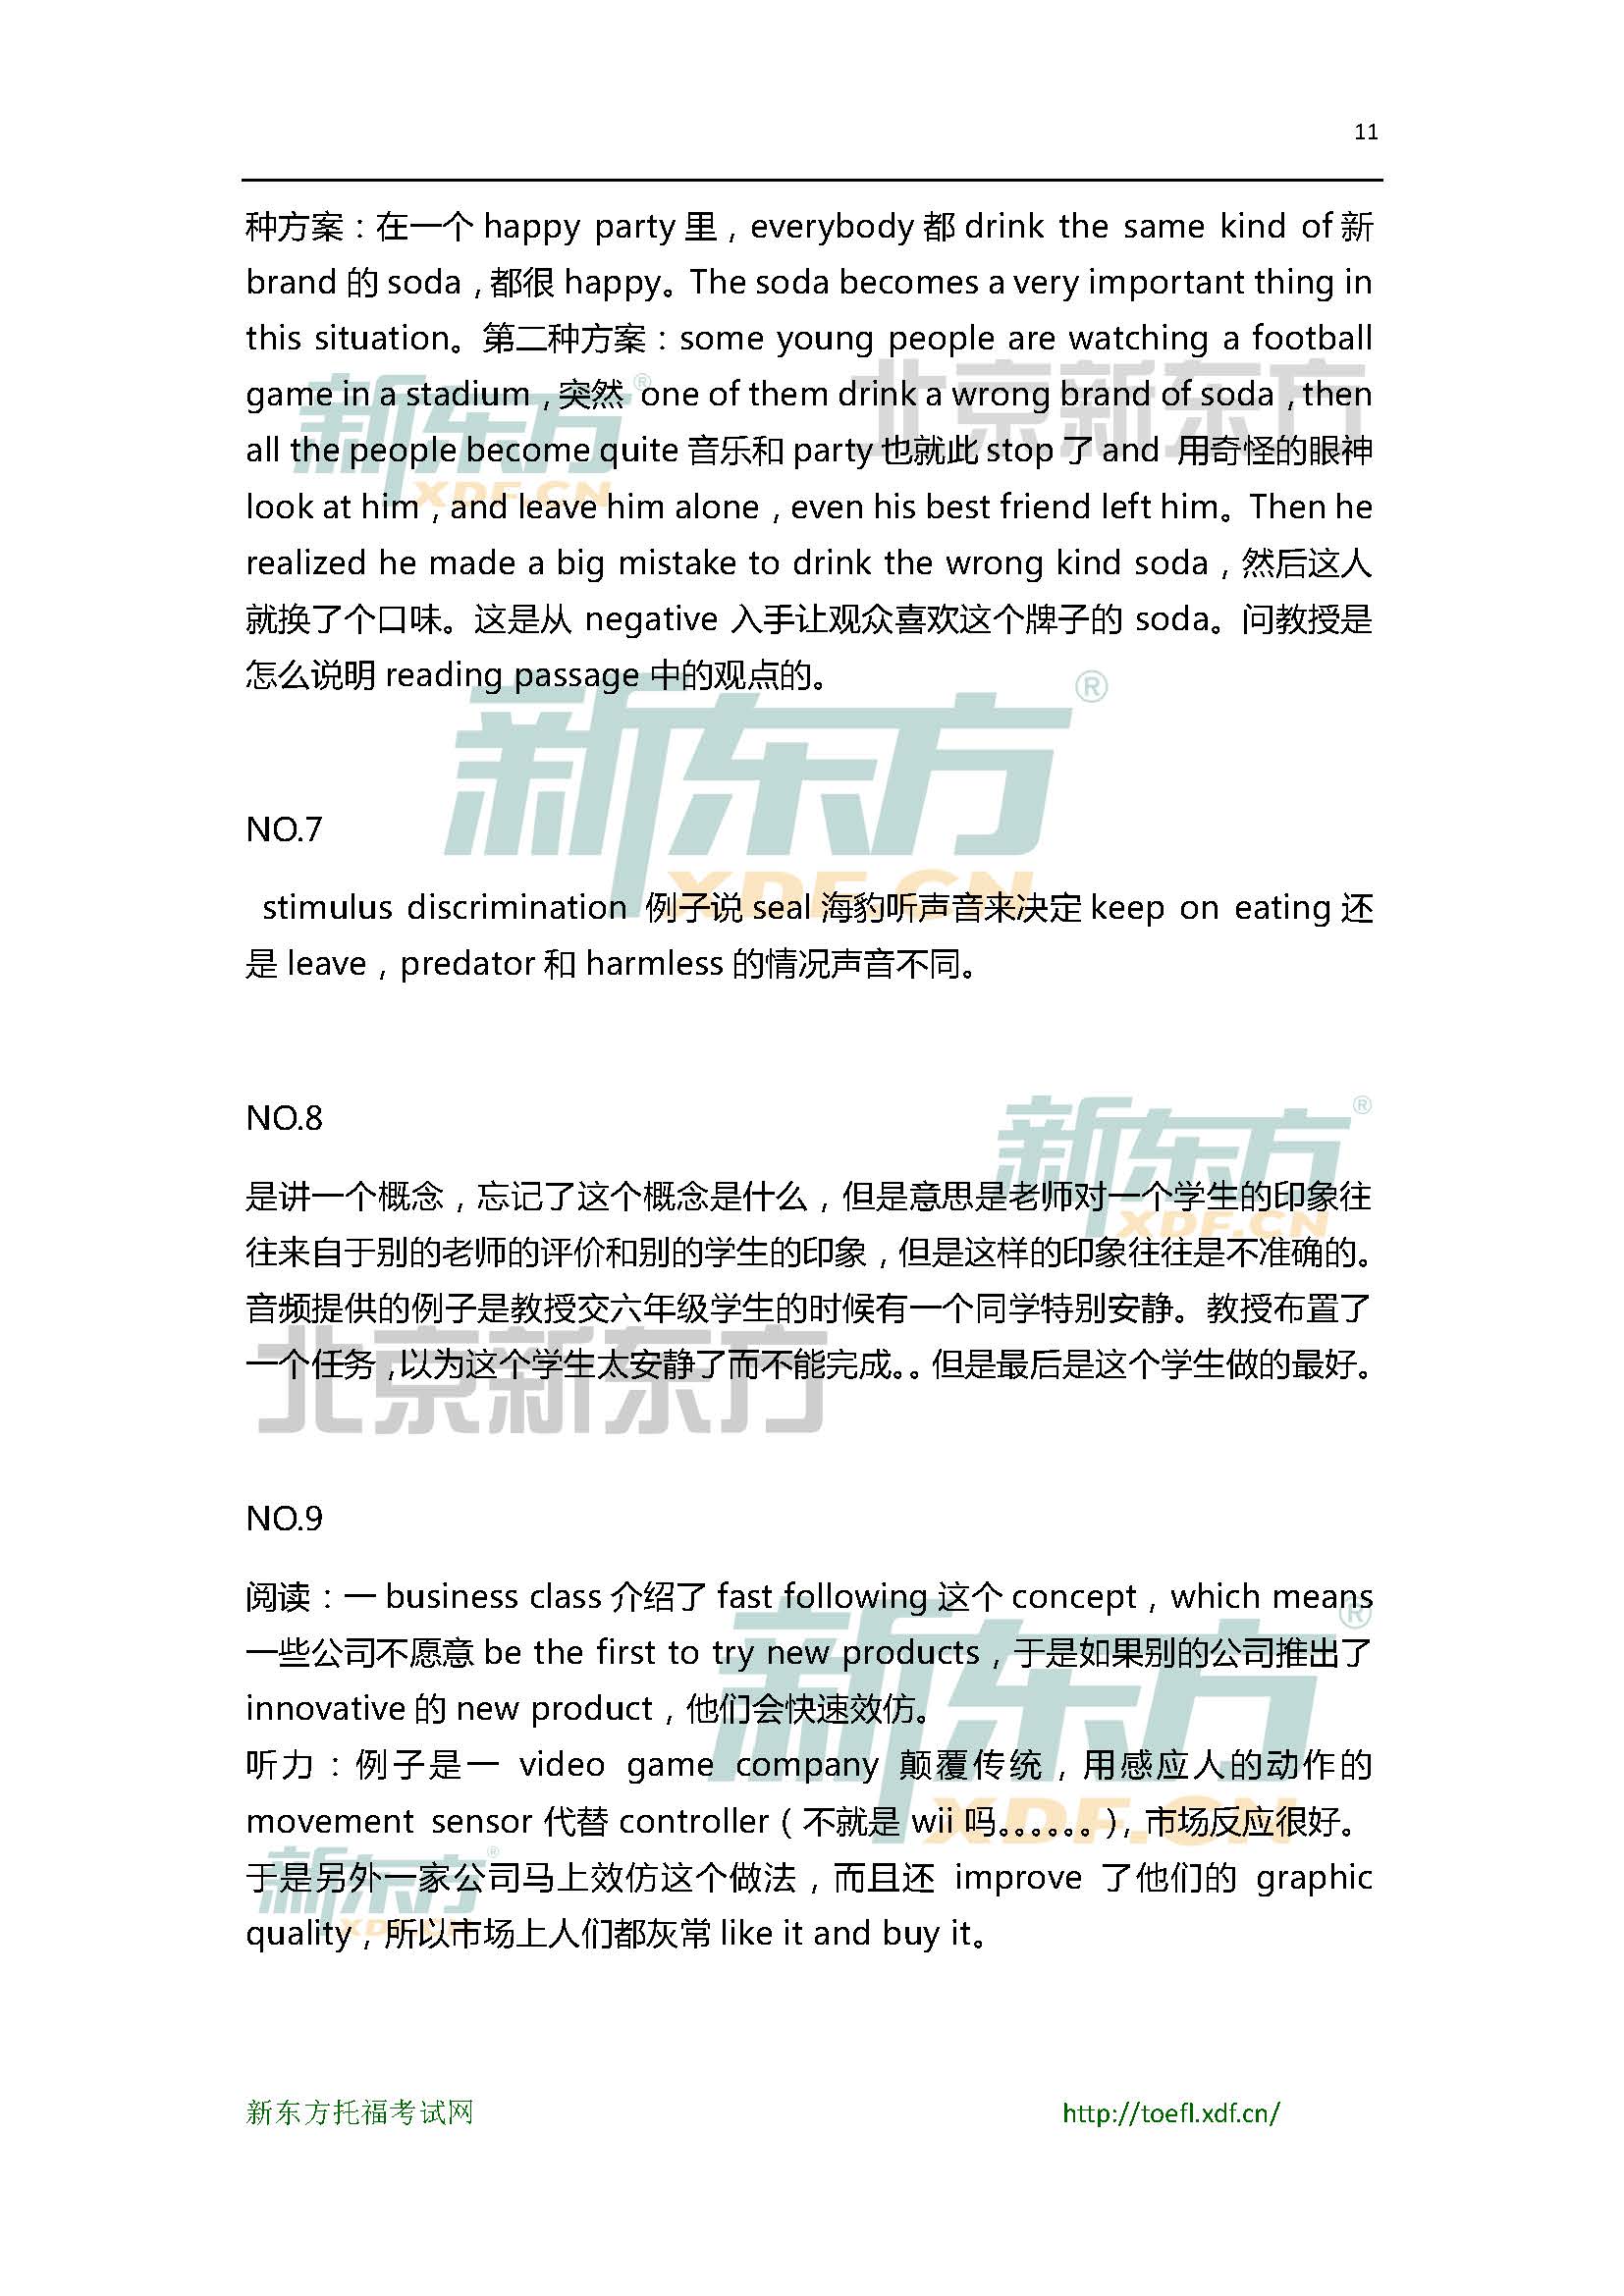 2015年5月30日托福口语小范围预测(12套题)